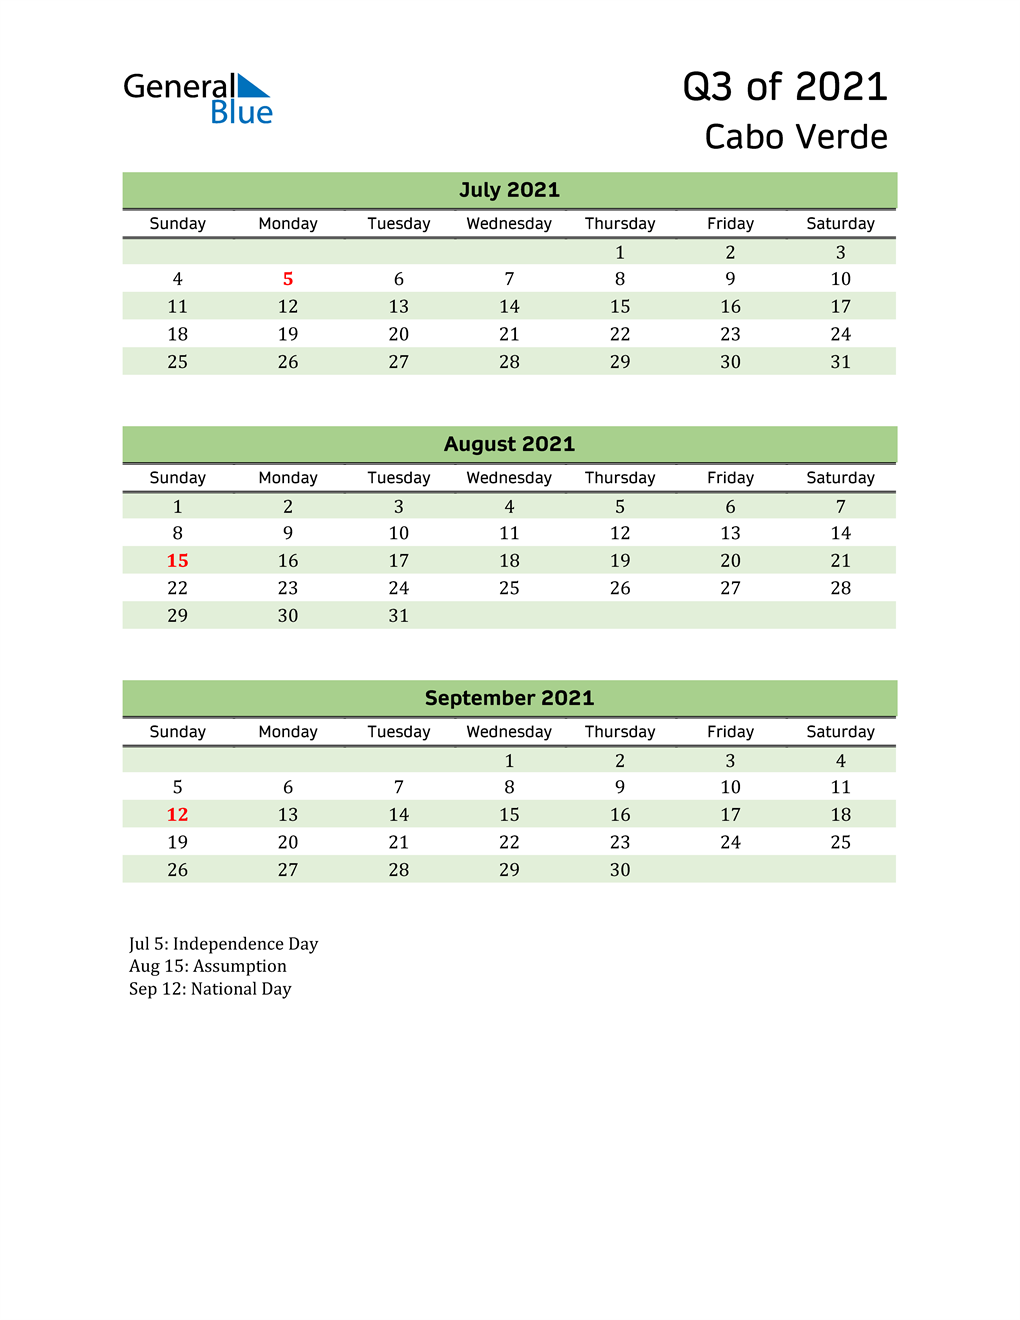  Quarterly Calendar 2021 with Cabo Verde Holidays 